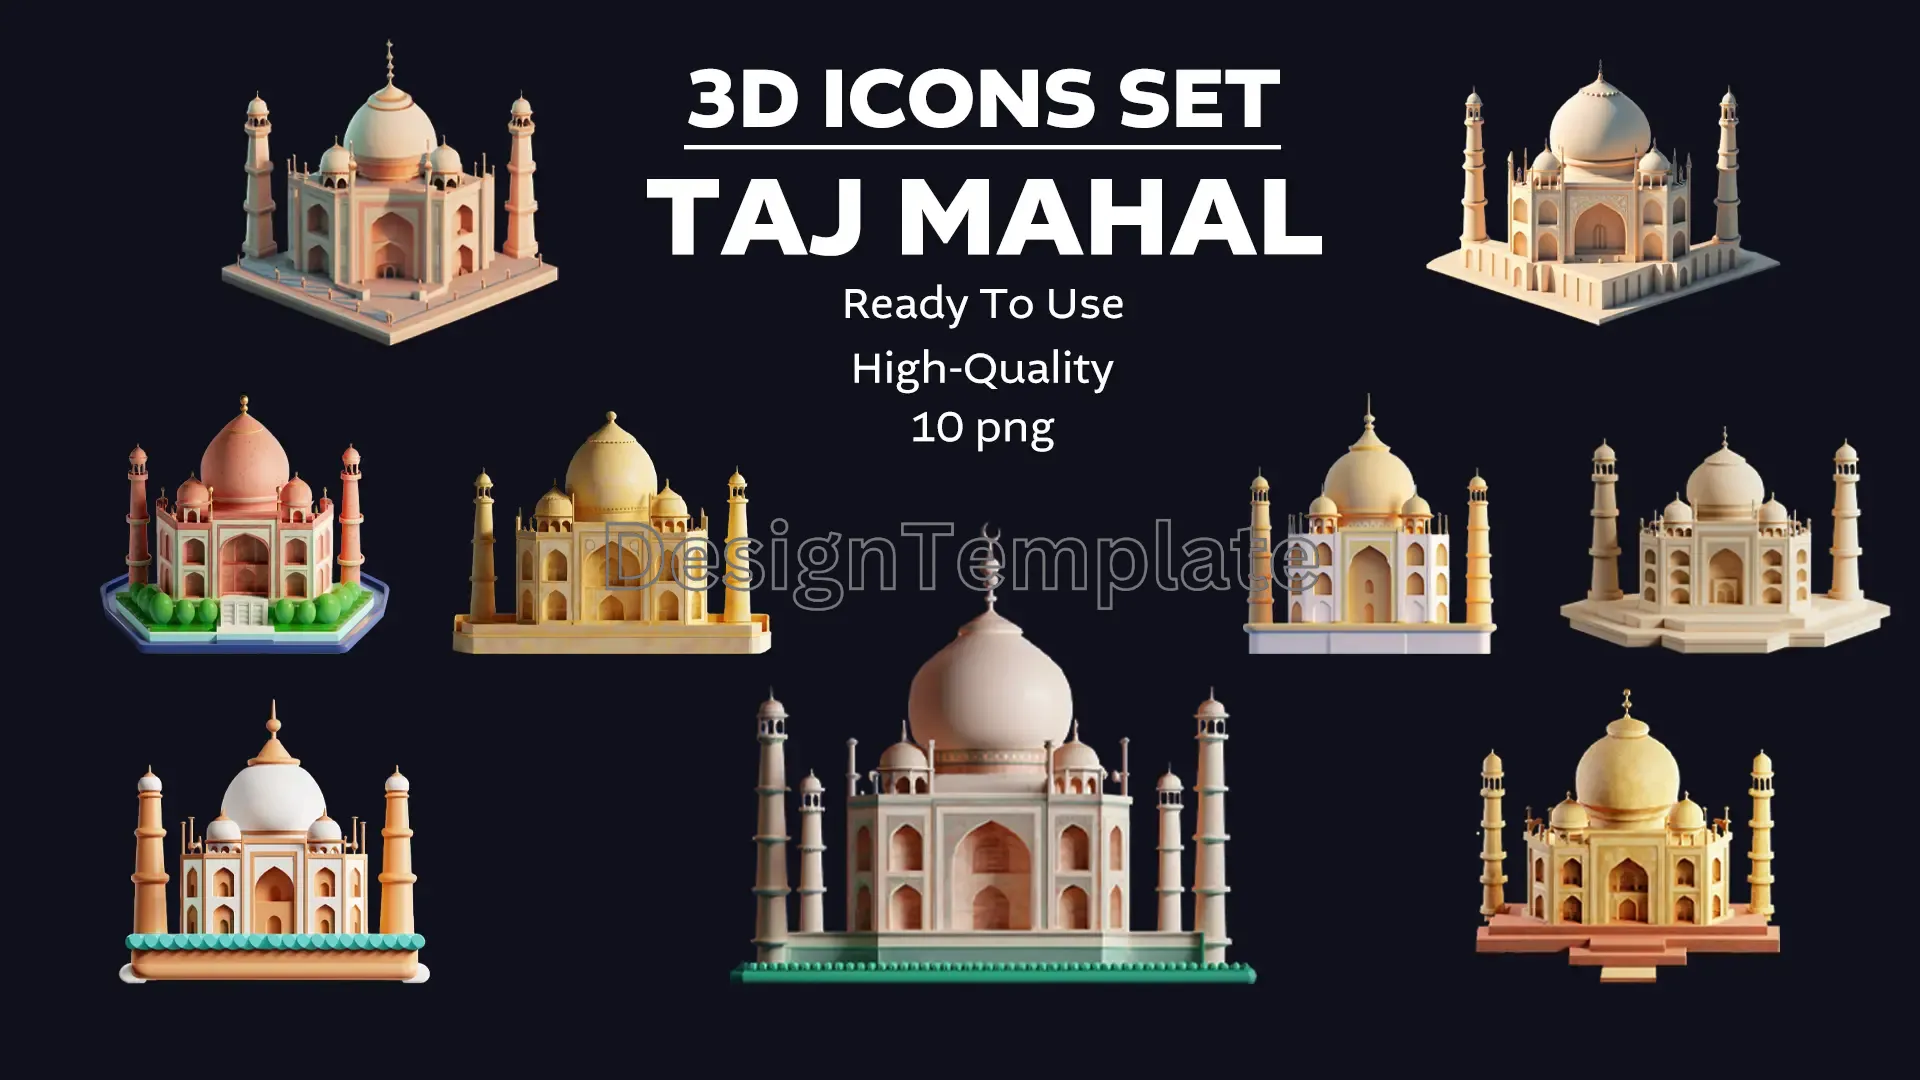 Architectural Marvel 3D Taj Mahal Set image